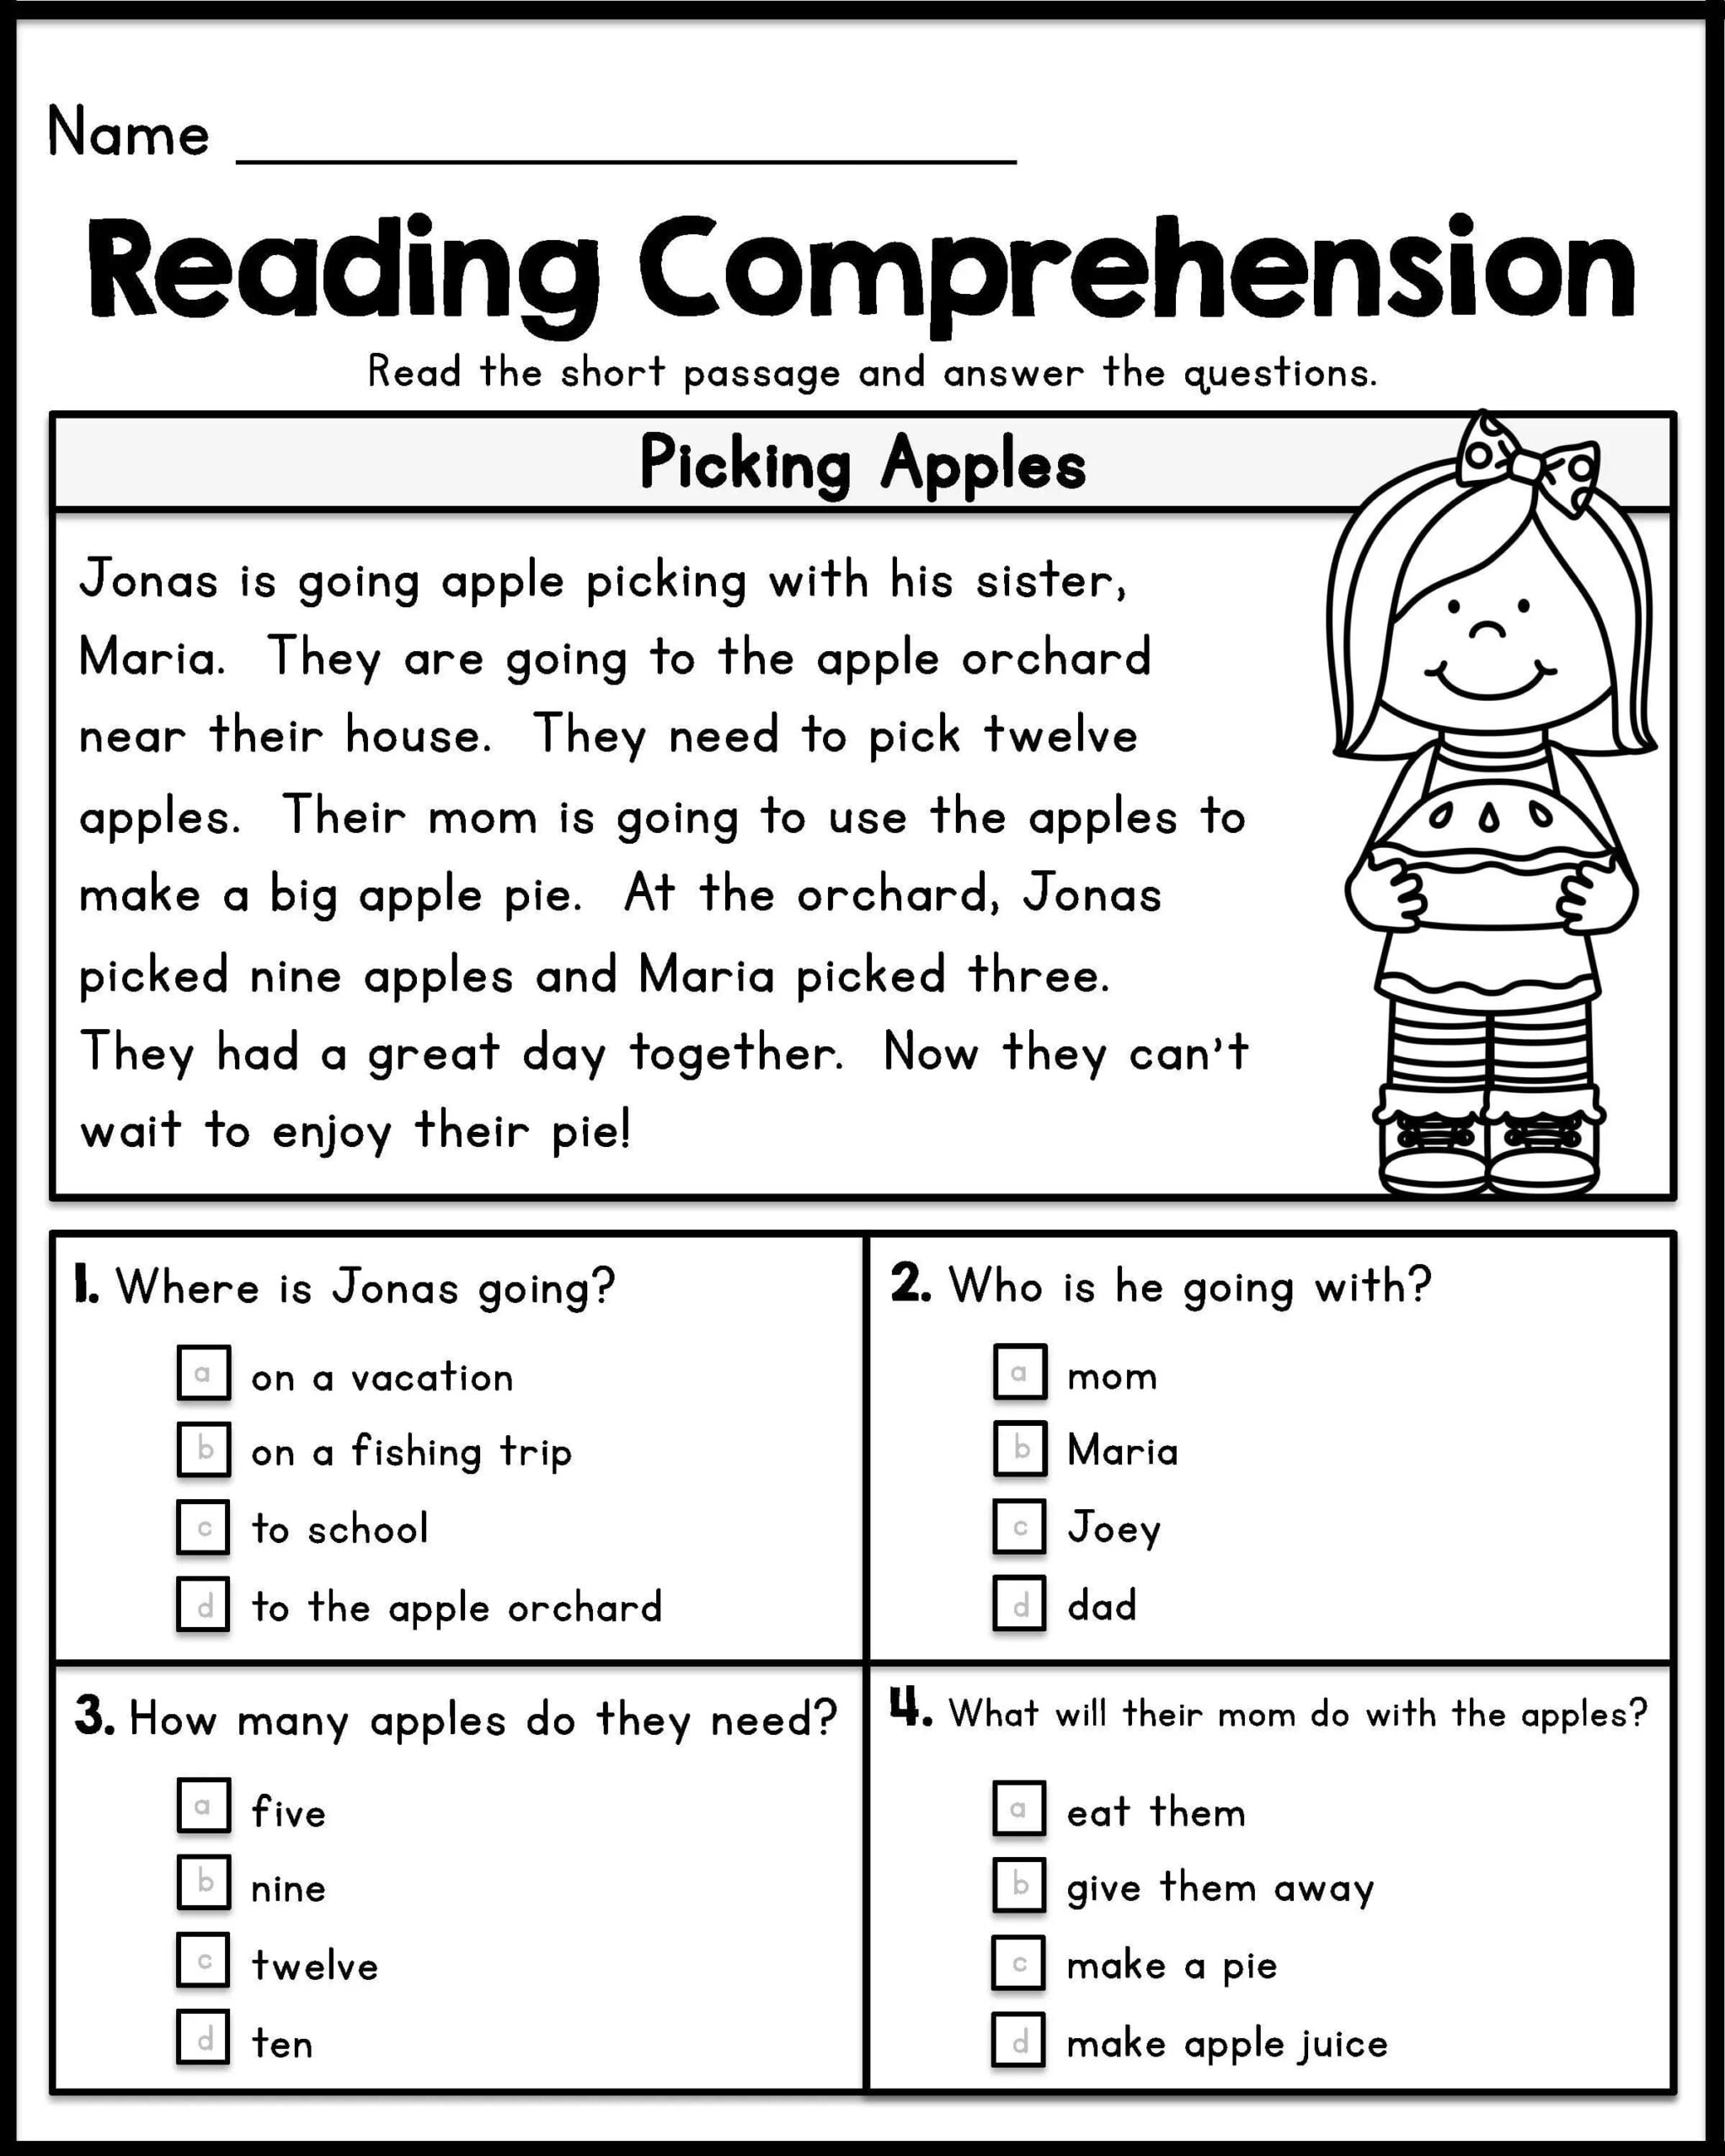 Reading Comprehension Worksheets For 1st Grade